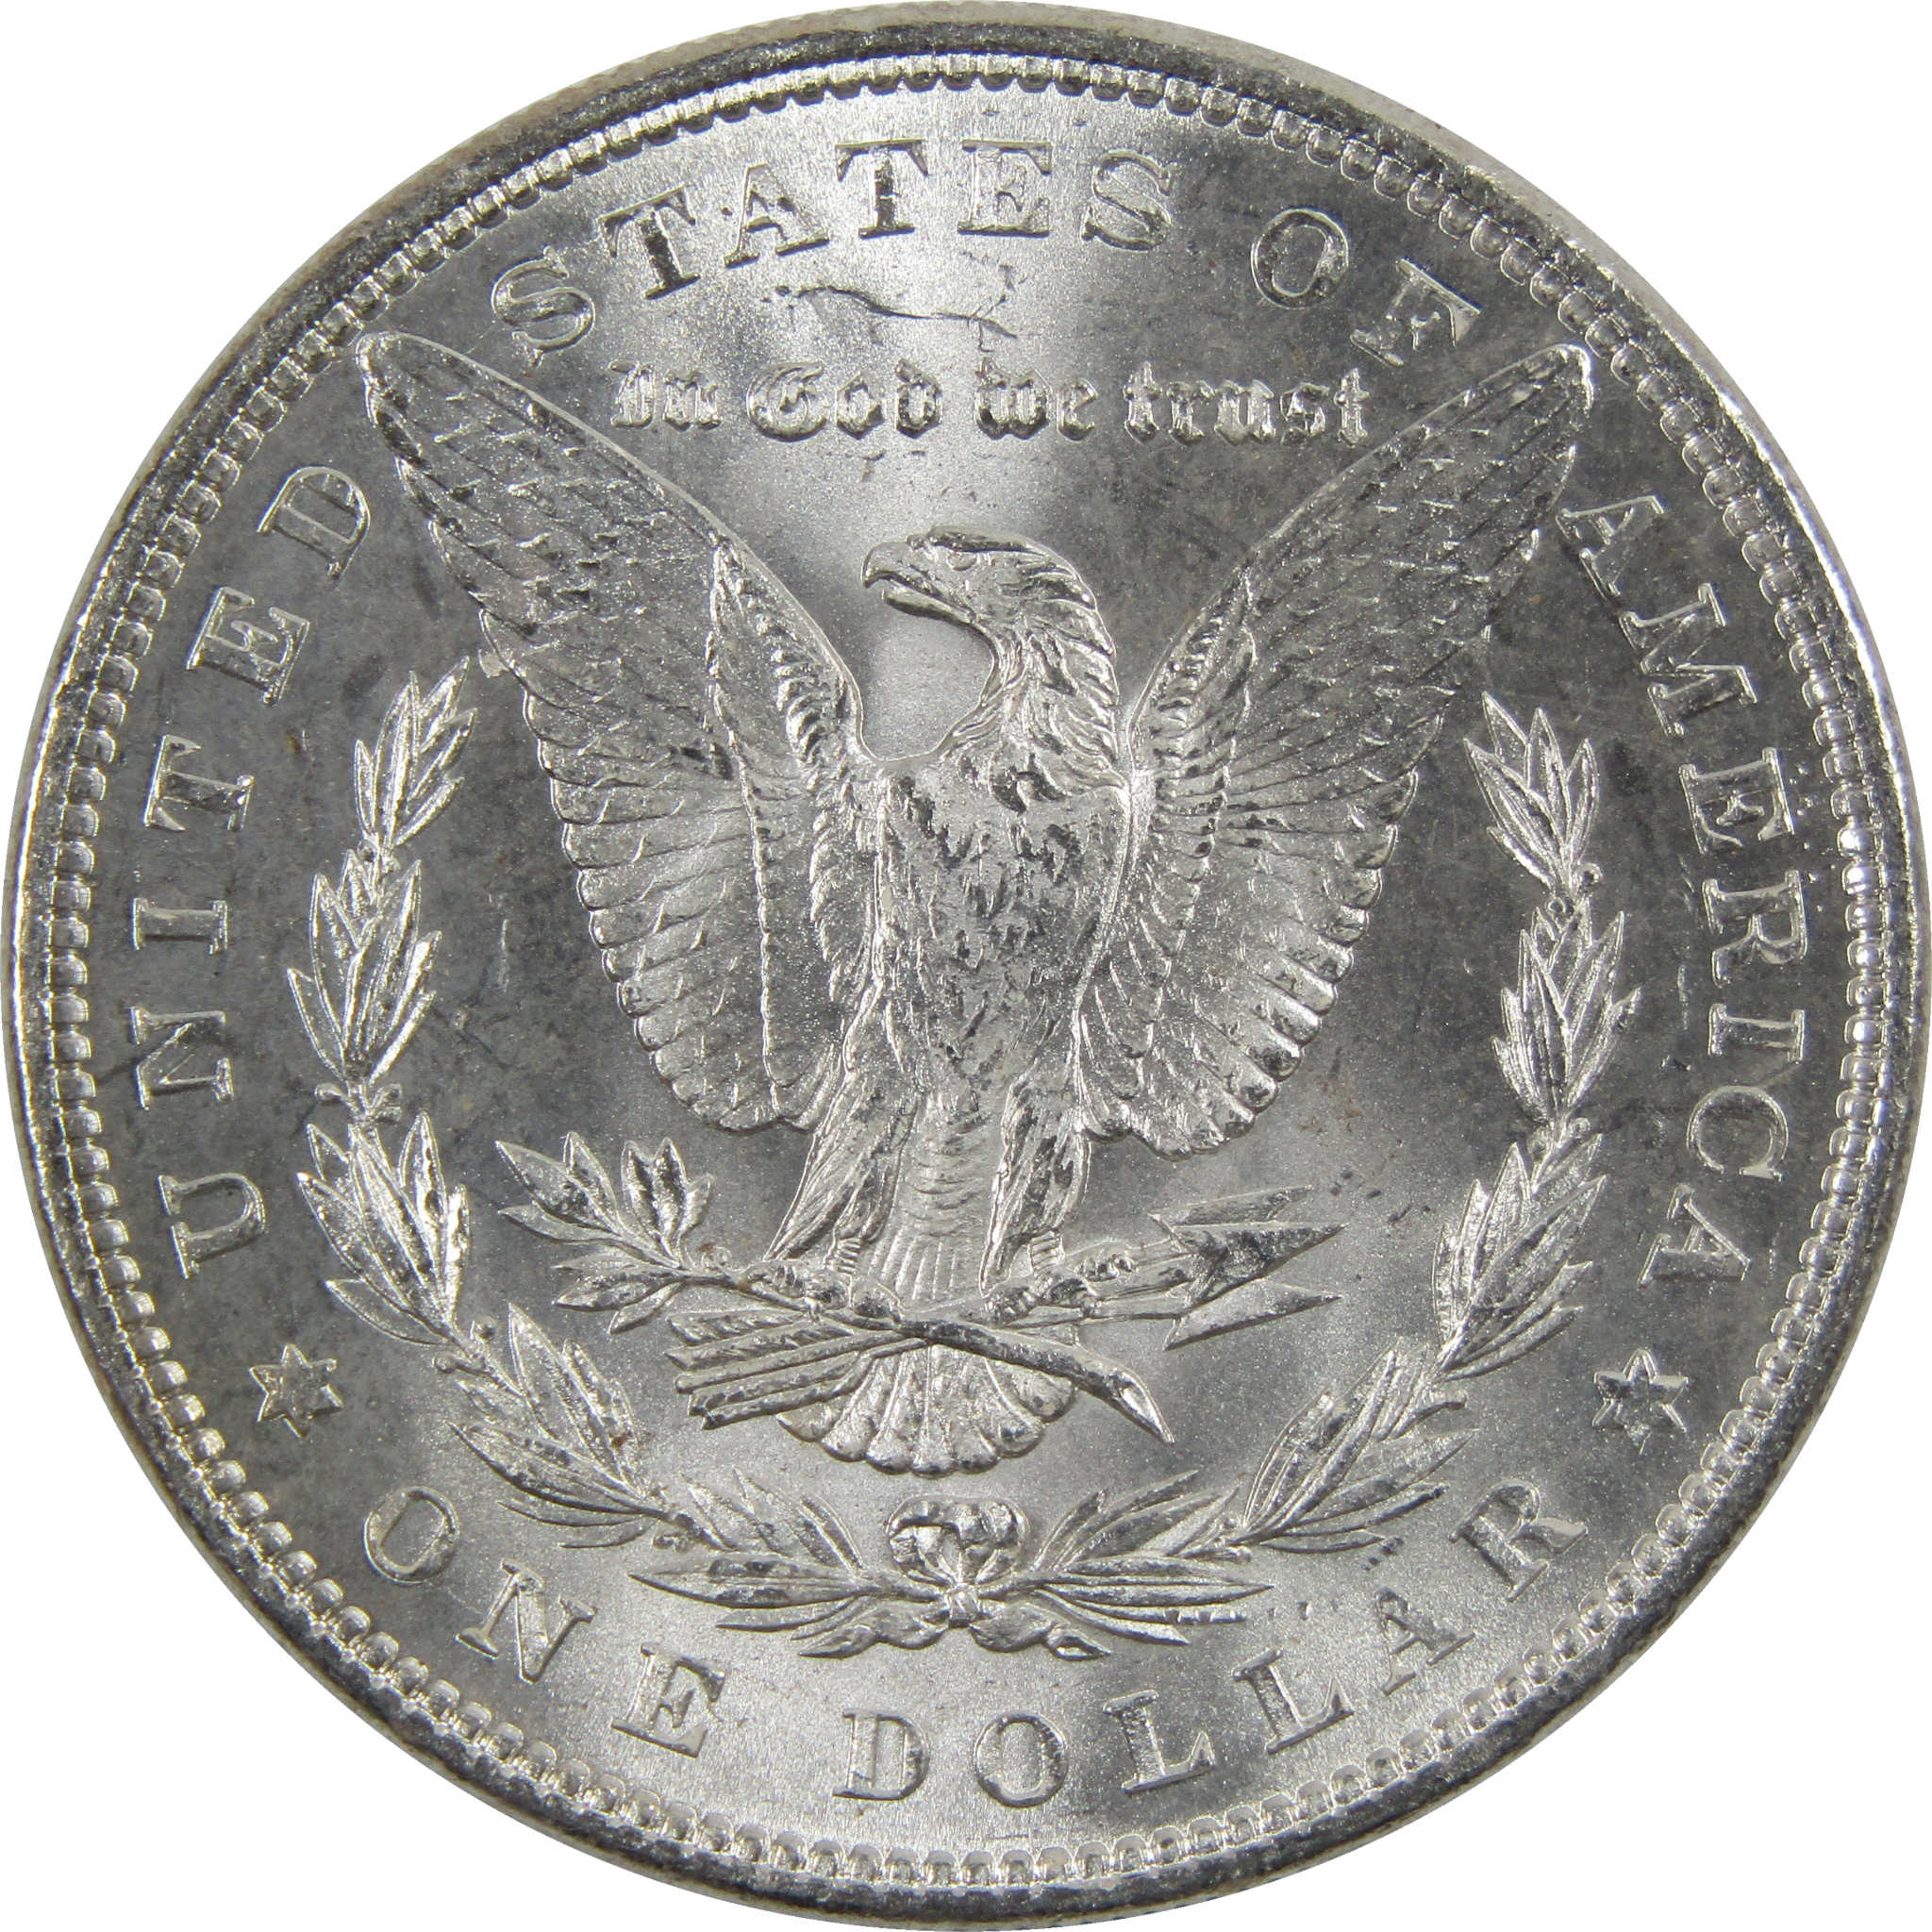 1884 Morgan Dollar BU Uncirculated 90% Silver $1 Coin SKU:I6020 - Morgan coin - Morgan silver dollar - Morgan silver dollar for sale - Profile Coins &amp; Collectibles